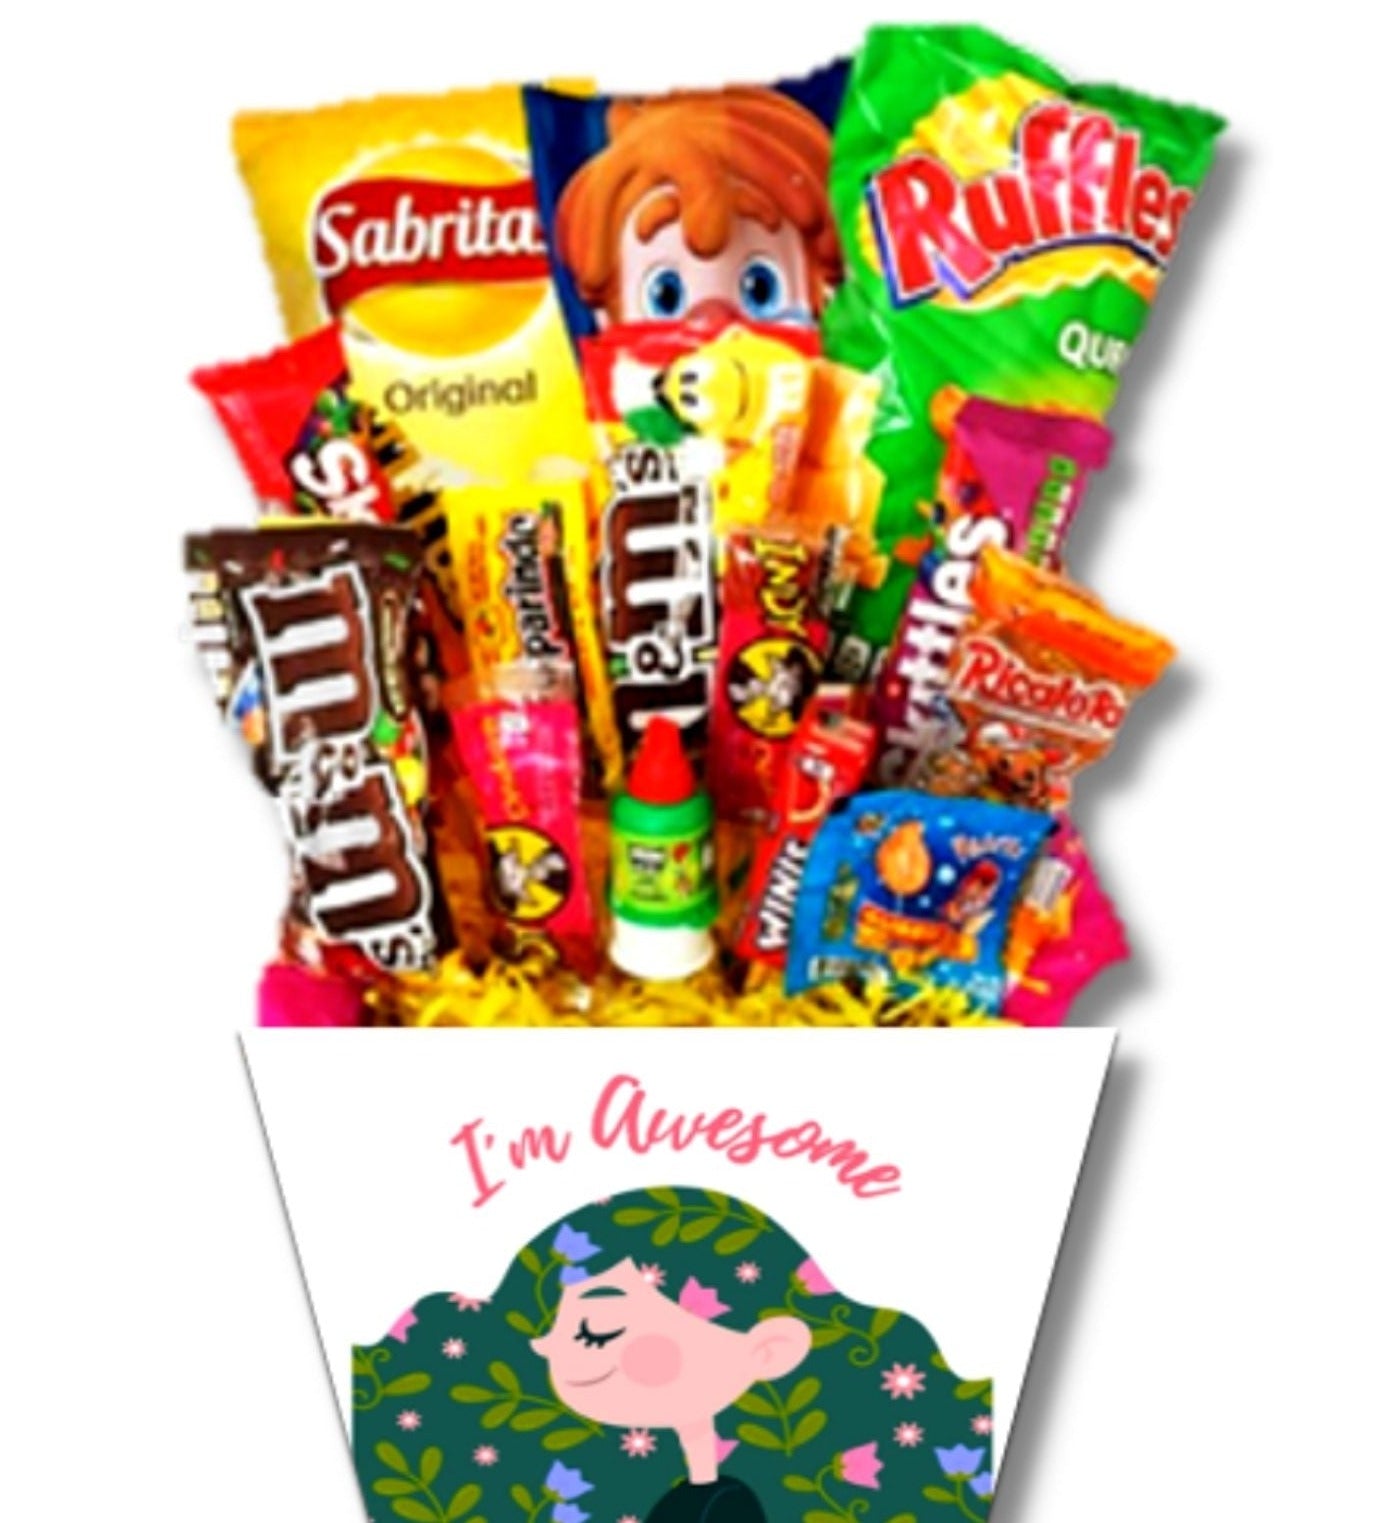 candybouquet regalo con dulces y chocolate para ella mujer novia esposa tia hermana